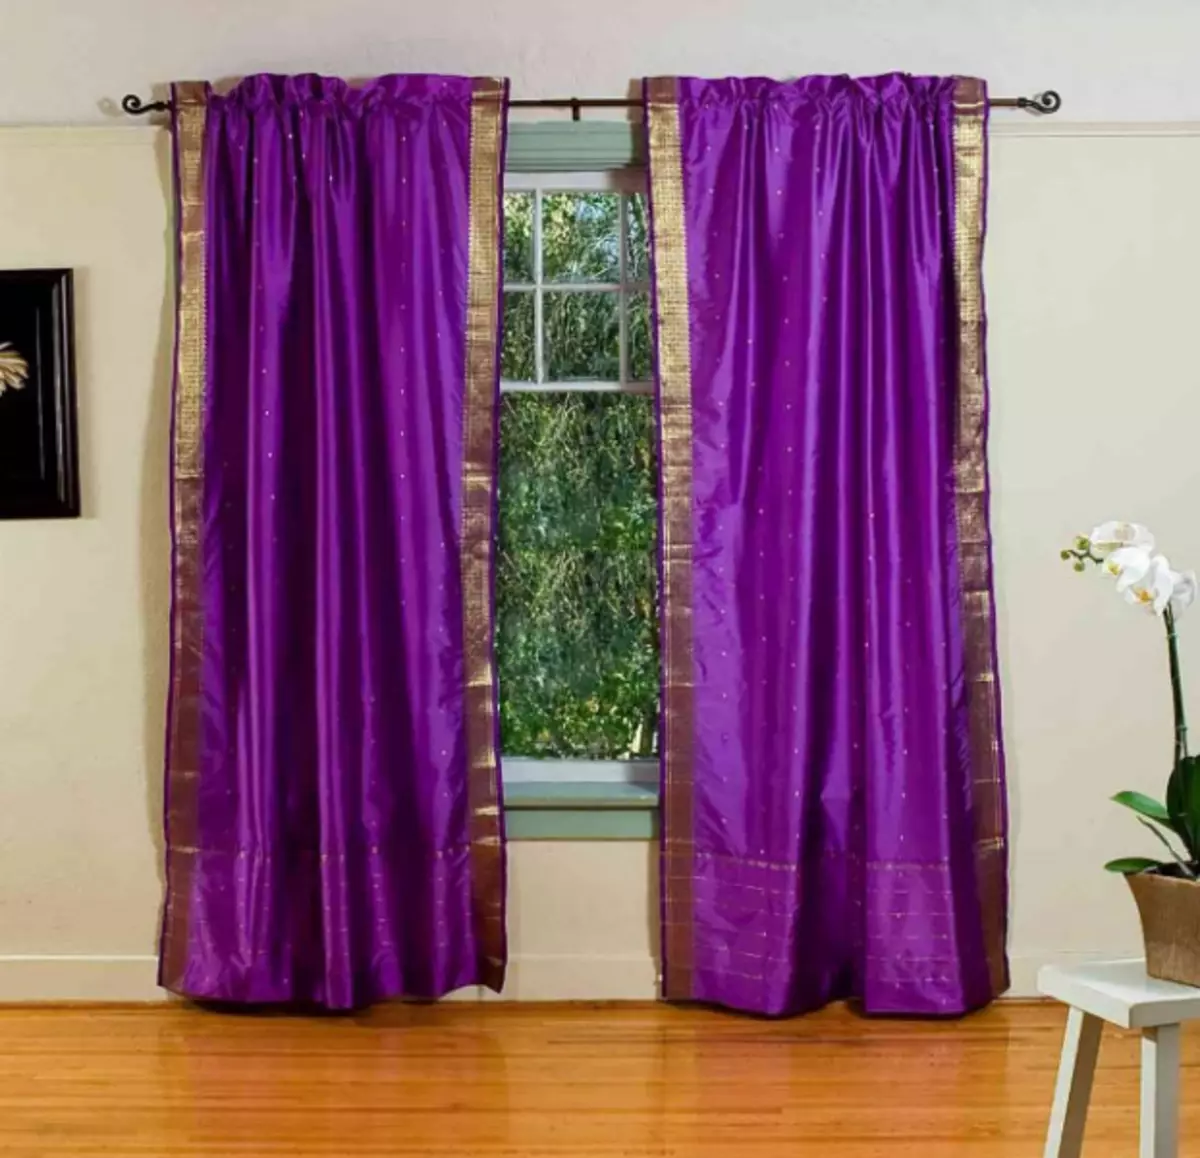 És adequat al vostre interior del color Lila de cortina?